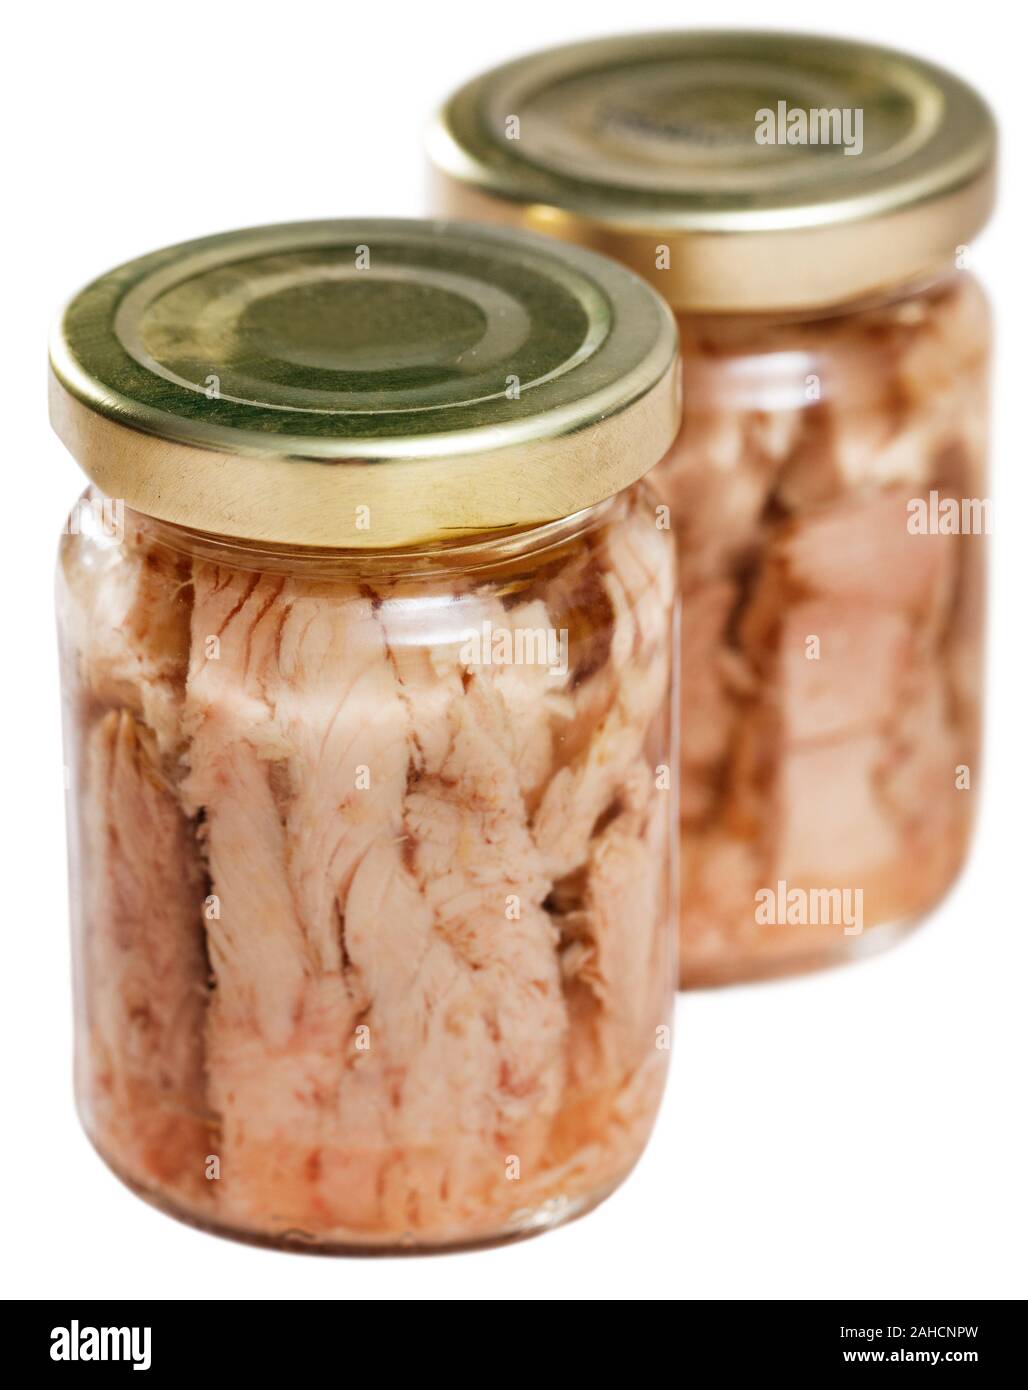 Appetitosi bonito naturale a filetti in olio in un barattolo di vetro. Isolato su sfondo bianco Foto Stock